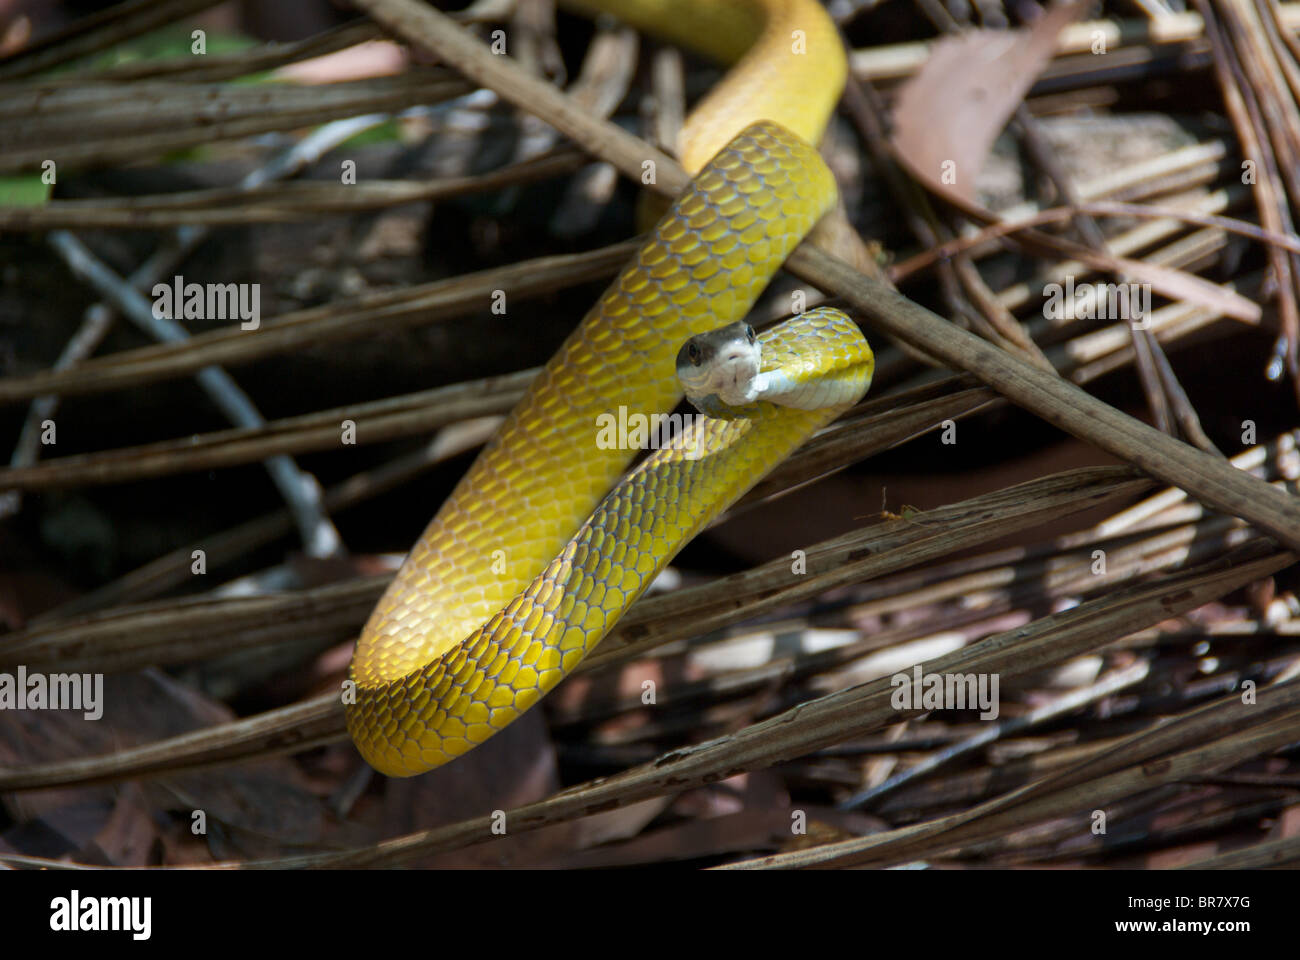 Un Golden Tree Snake (Dendrelaphis punctulata) en una posición defensiva. Foto de stock